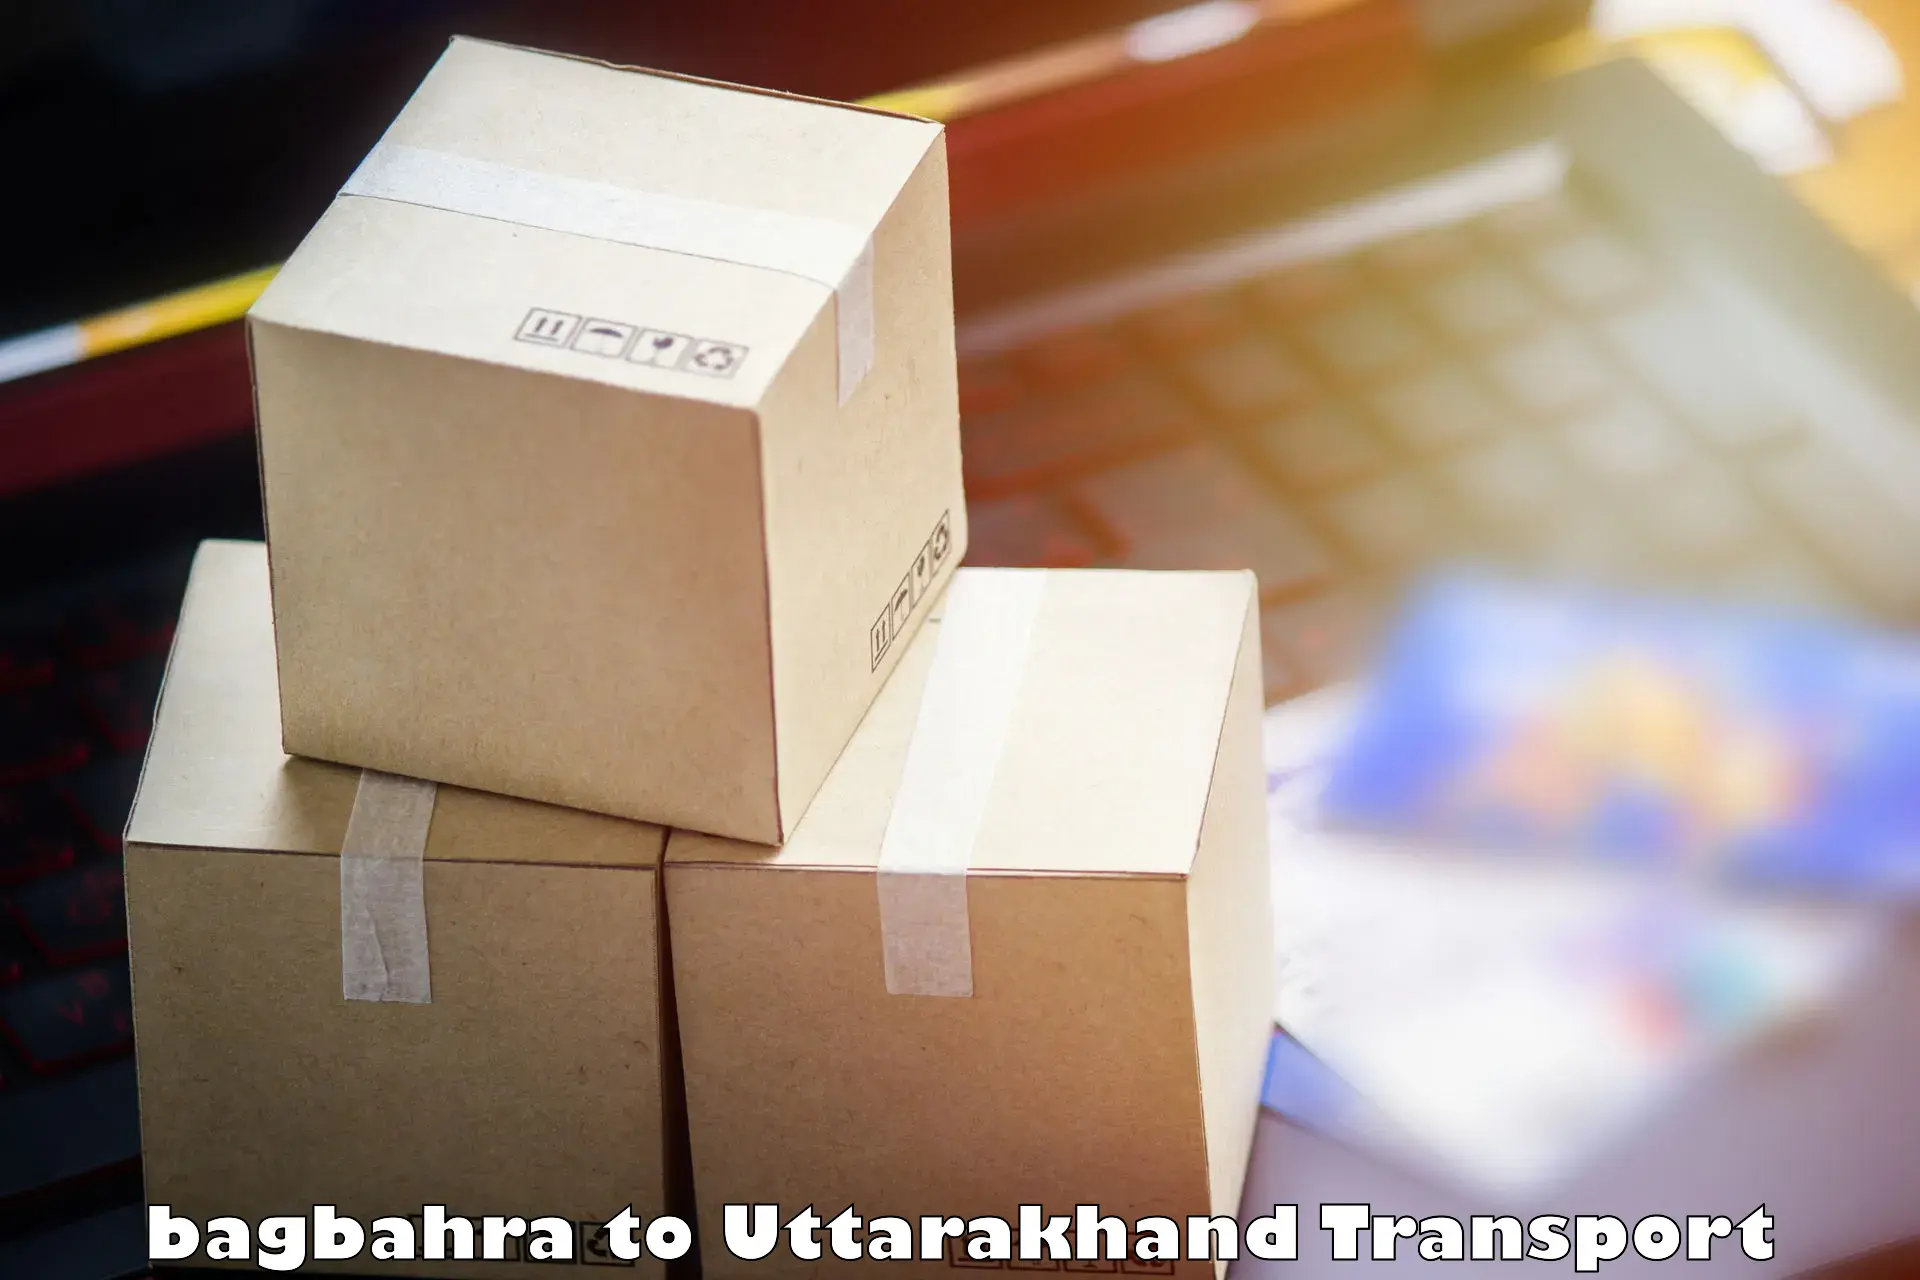 Furniture transport service bagbahra to Kotdwara